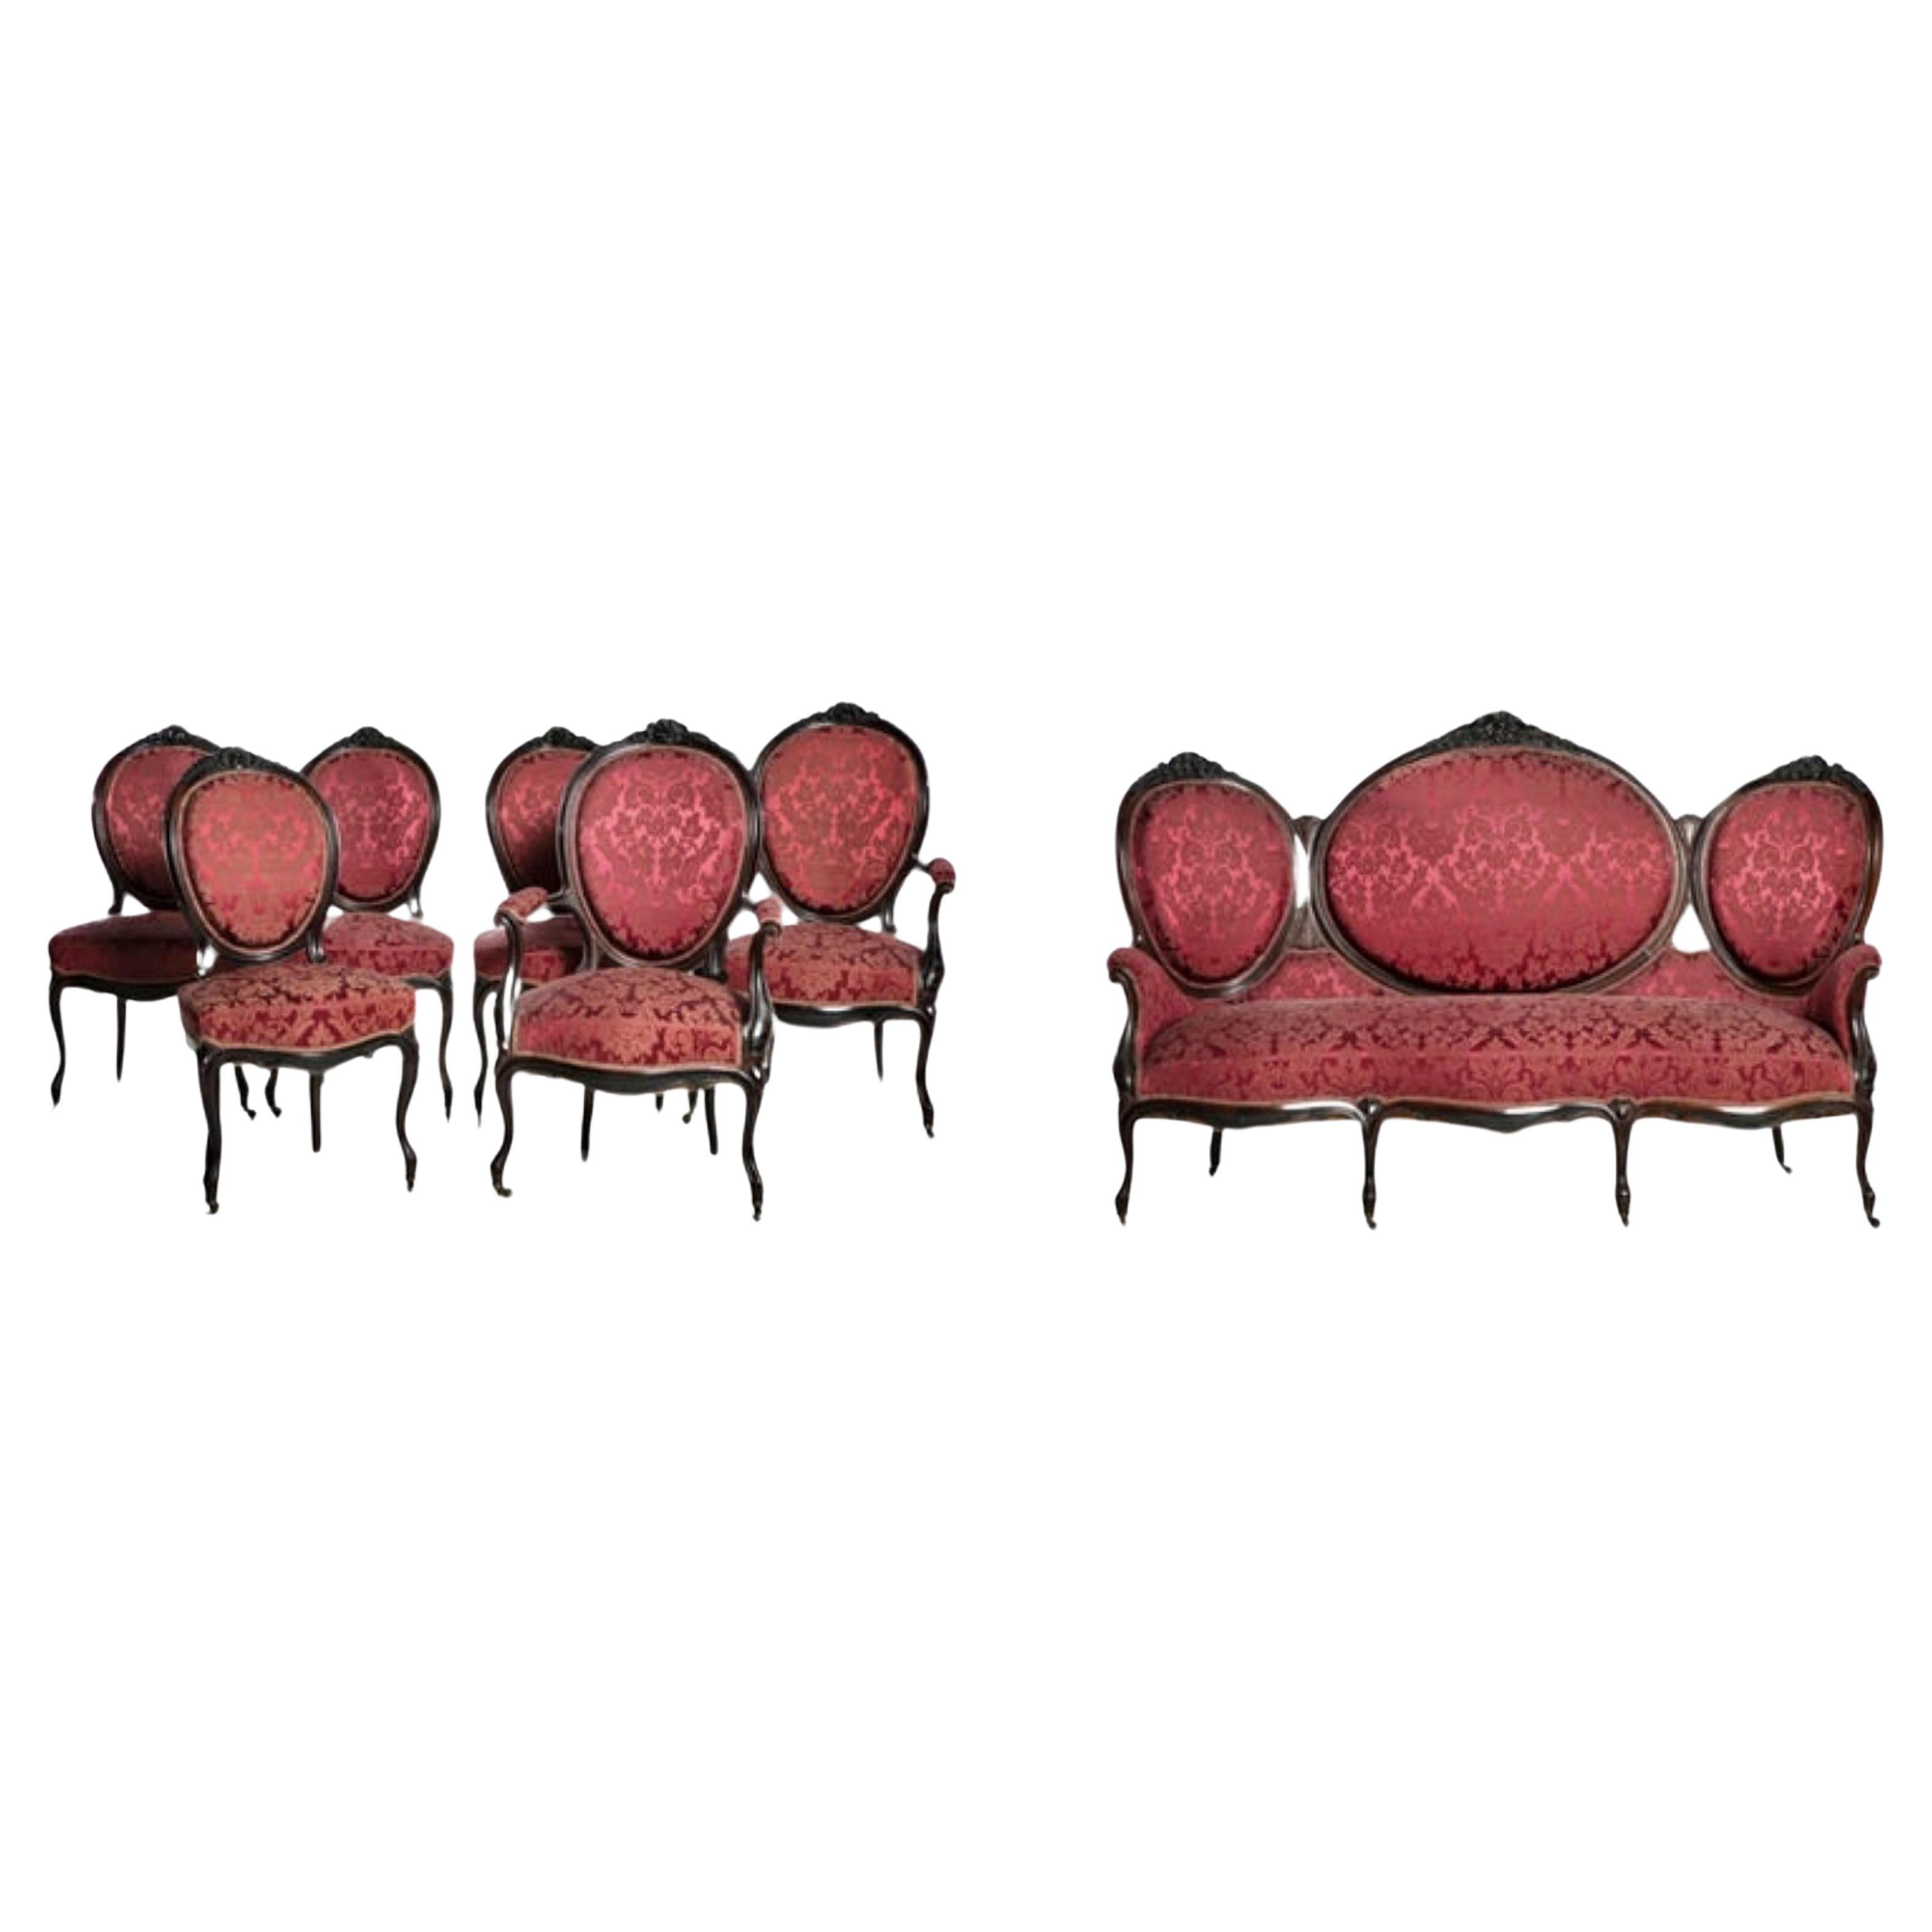 Canape-Set aus zwei Sesseln und vier Stühlen, portugiesisch, 19. Jahrhundert